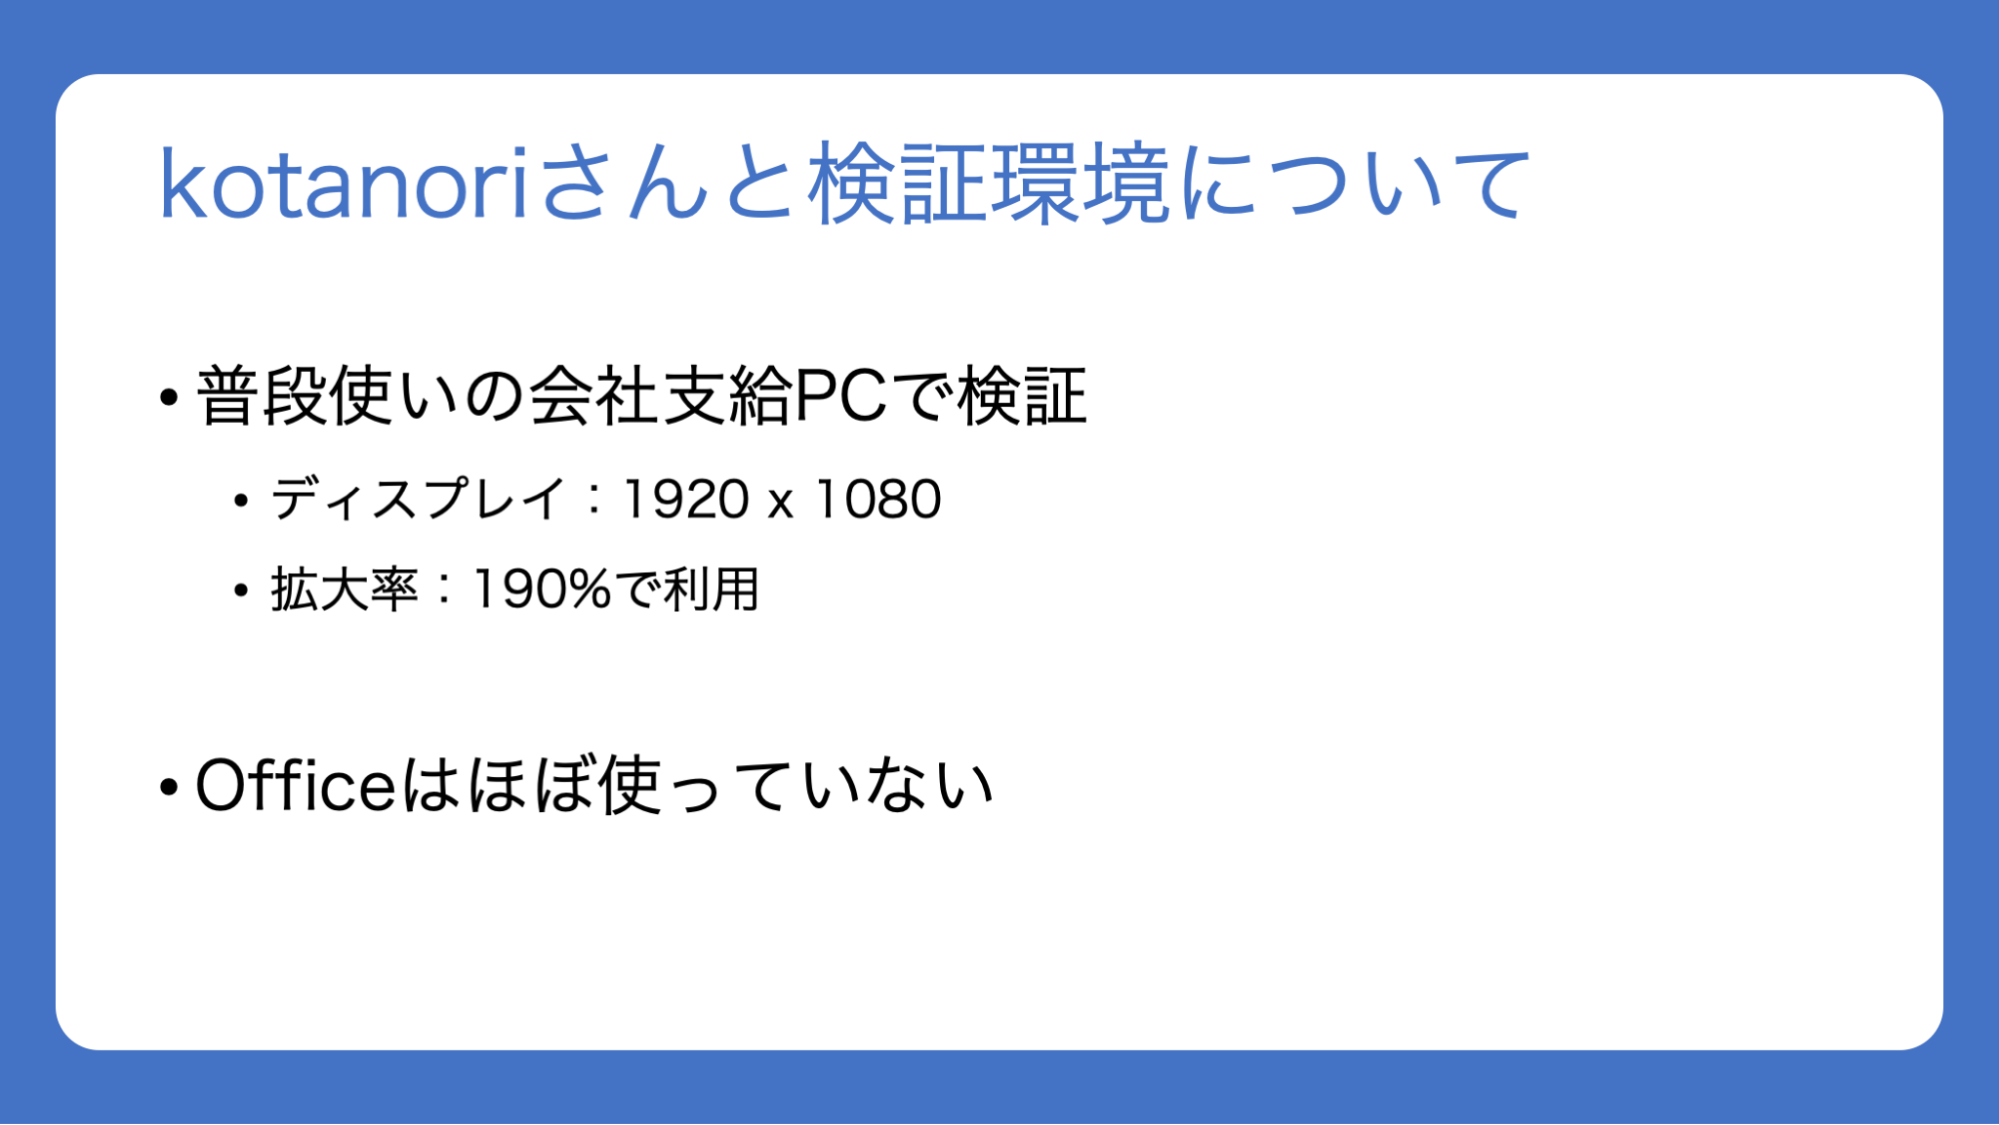 スライド：「kotanoriさんと検証環境について。普段使いの会社支給PCで検証。ディスプレイ：1920×1080。拡大率：190%で利用。Officeはほぼ使っていない」と書かれている。